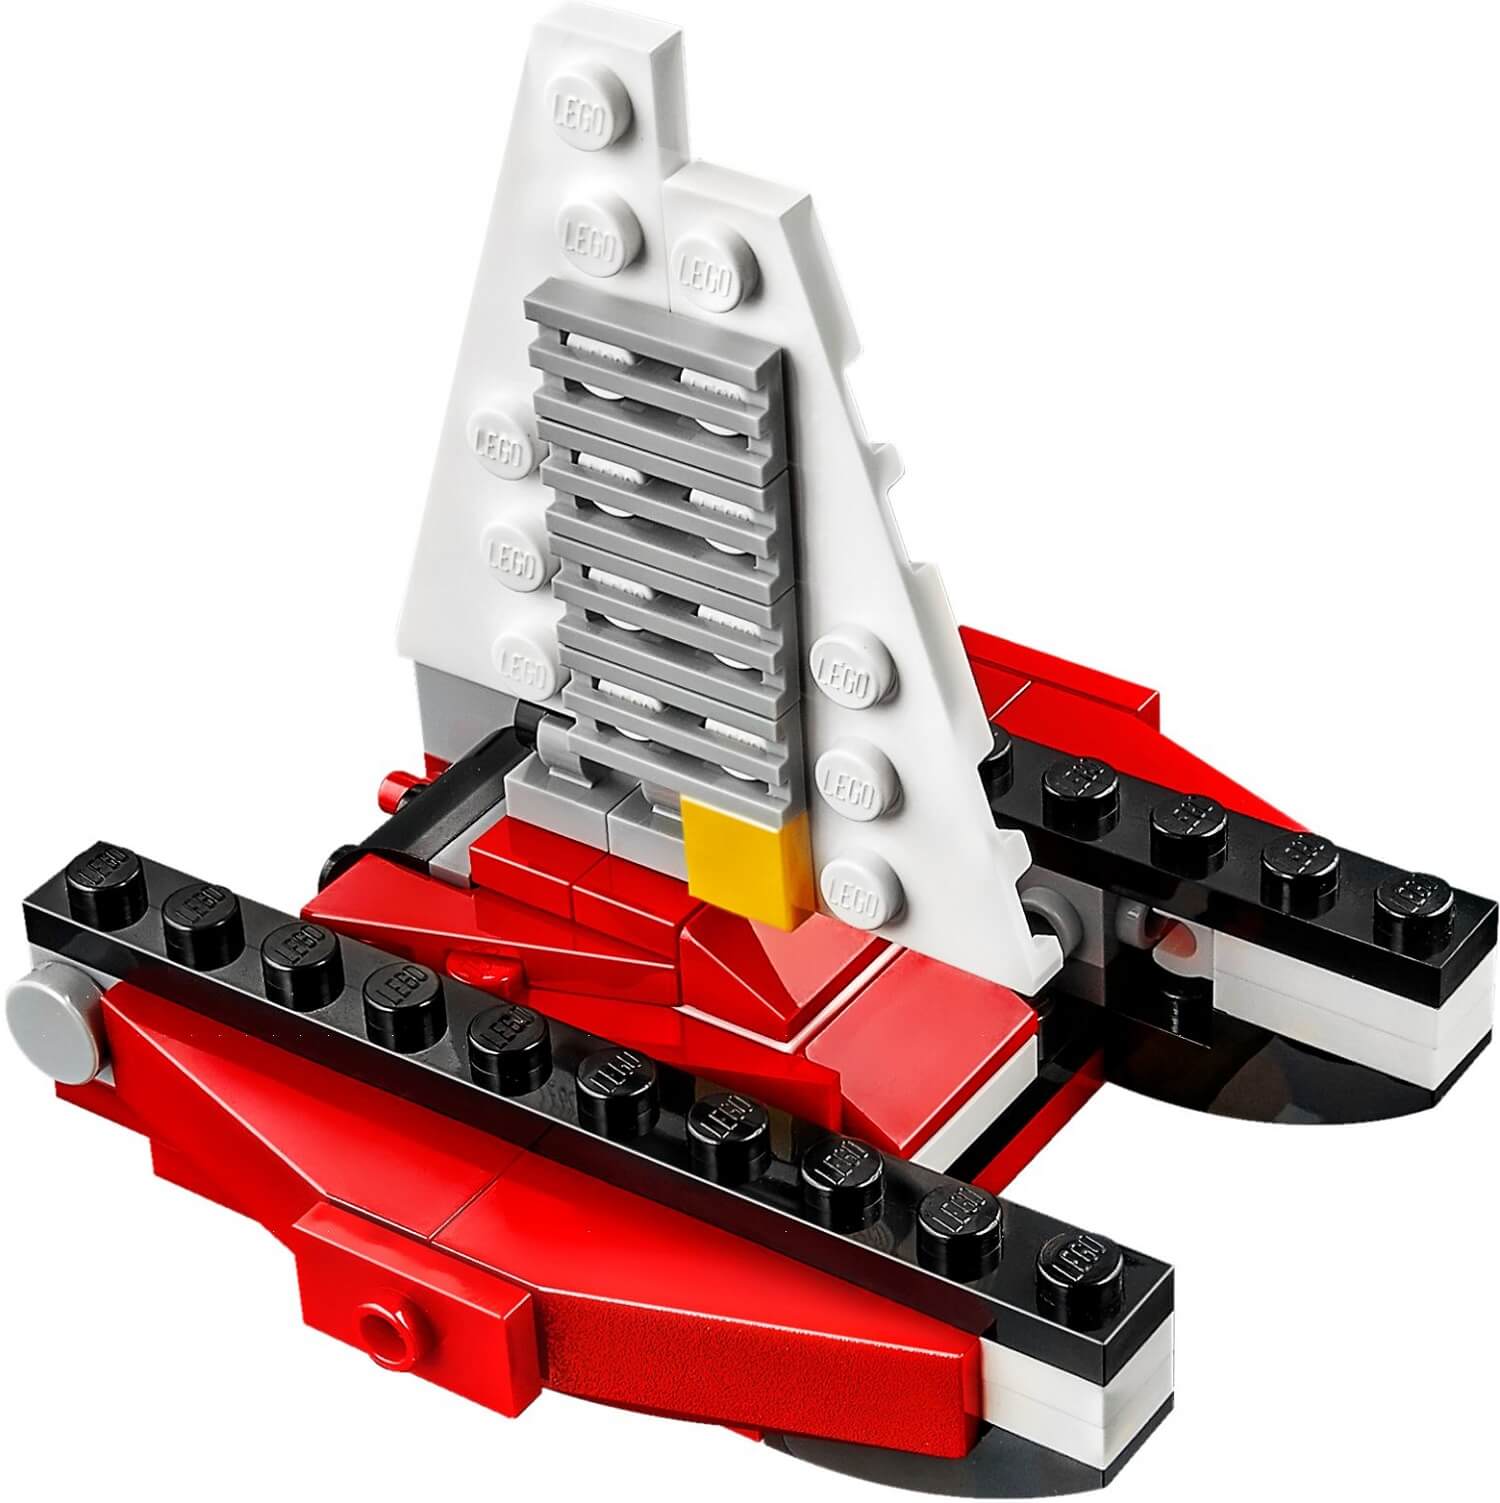 Estrella aerea ( Lego 31057 ) imagen c